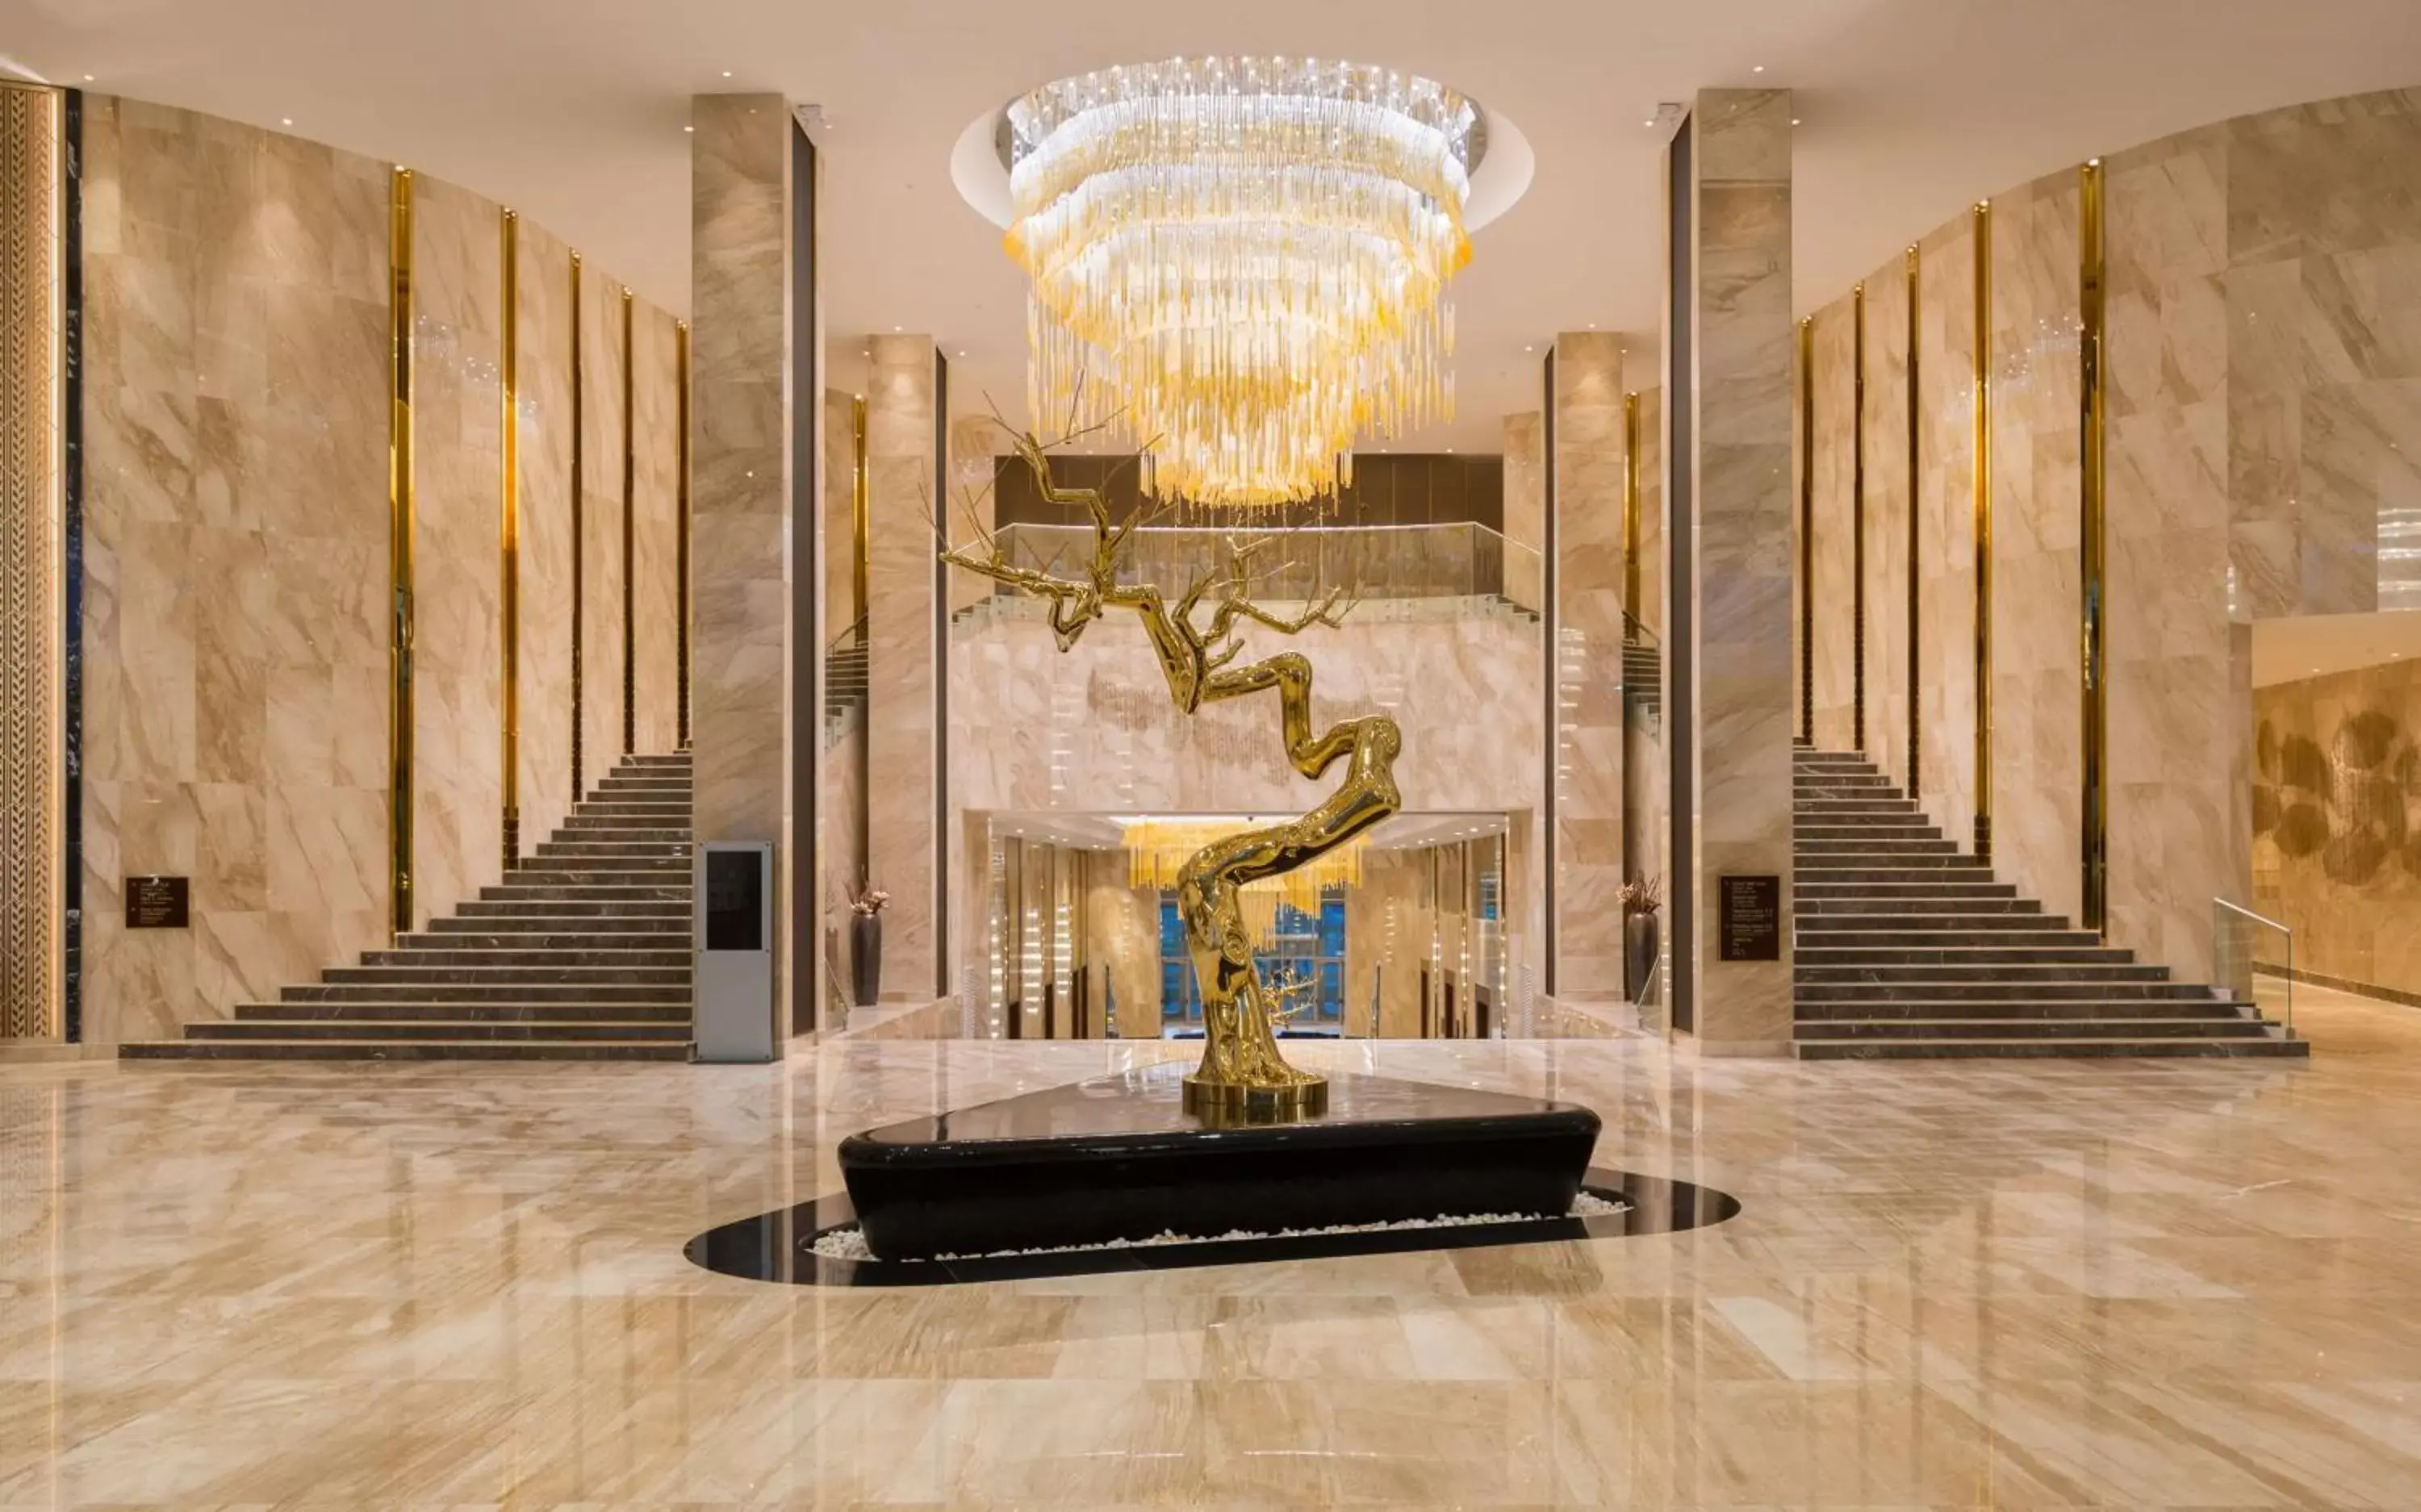 Lobby or reception in Hilton Astana